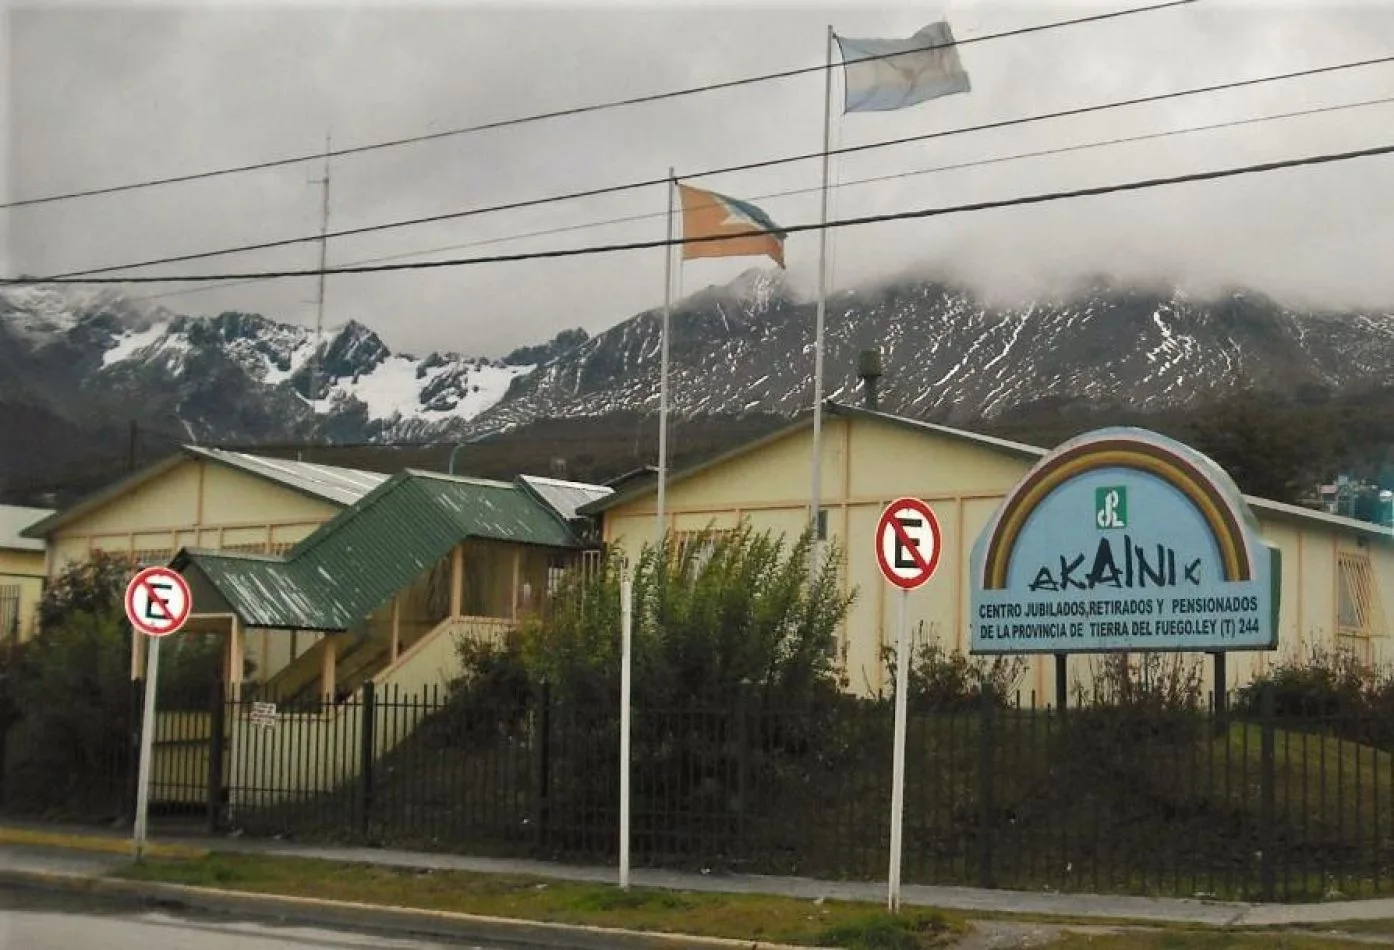 Centro de Jubilados “Akainik” de la ciudad de Ushuaia.